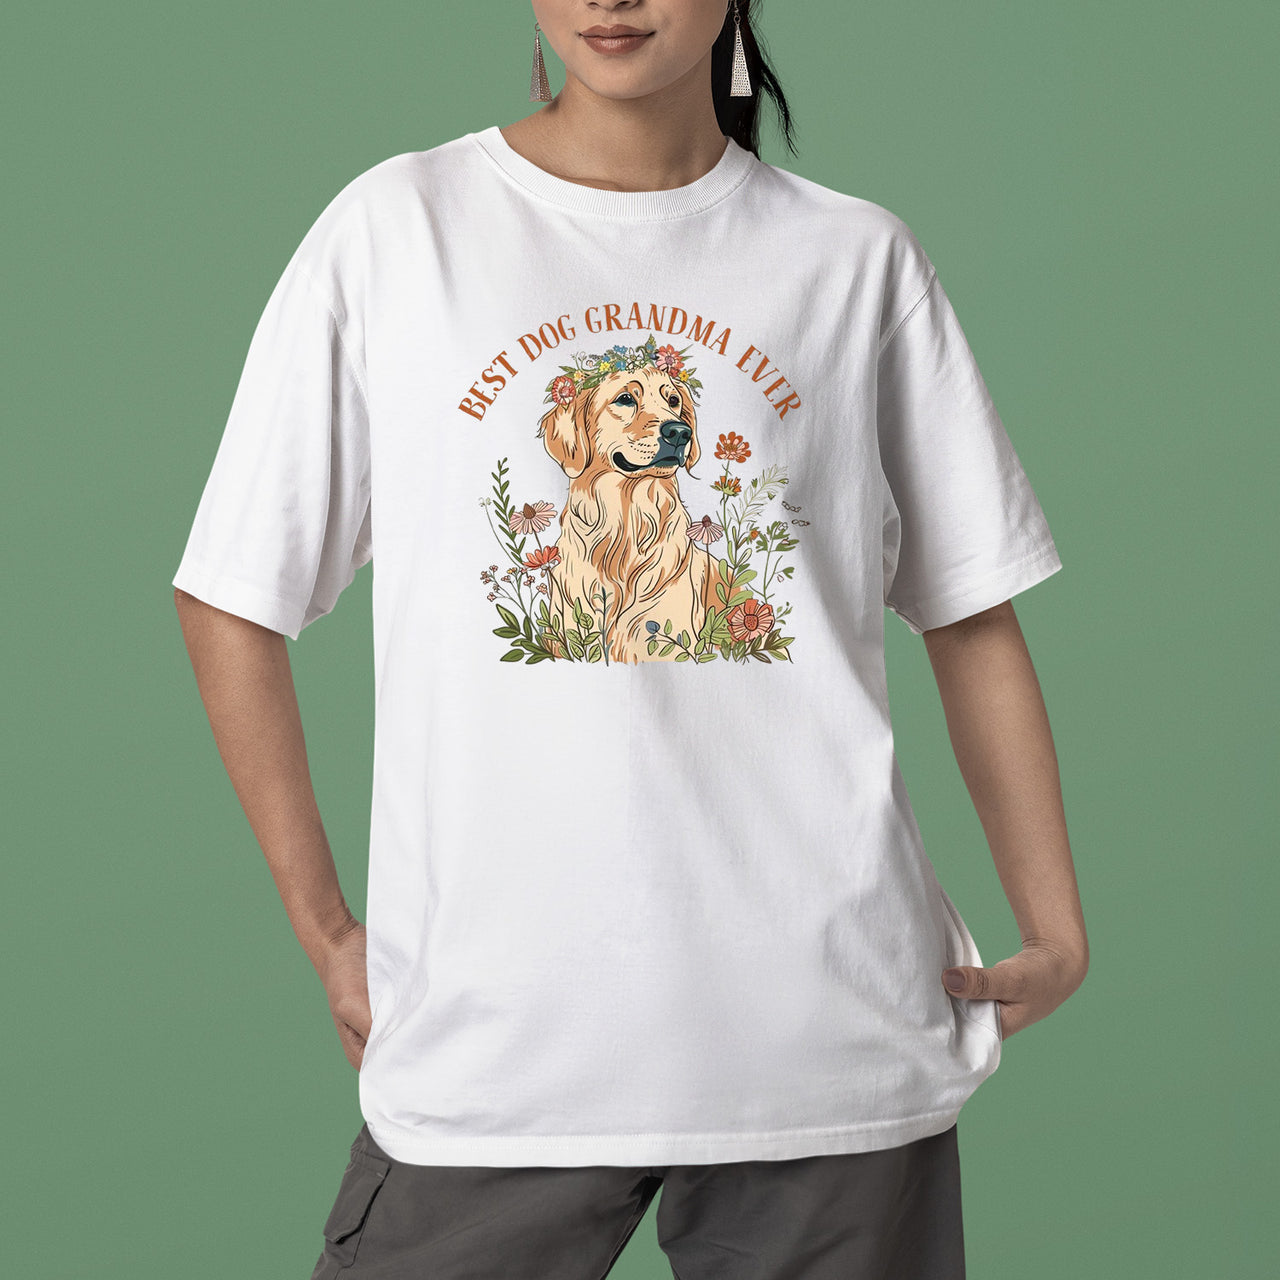 Golden Retriever Dog T-shirt, Pet Lover Shirt, Dog Lover Shirt, Best Dog Grandma Ever T-Shirt, Dog Owner Shirt, Gift For Dog Grandma, Funny Dog Shirts, Women Dog T-Shirt, Mother's Day Gift, Dog Lover Wife Gifts, Dog Shirt